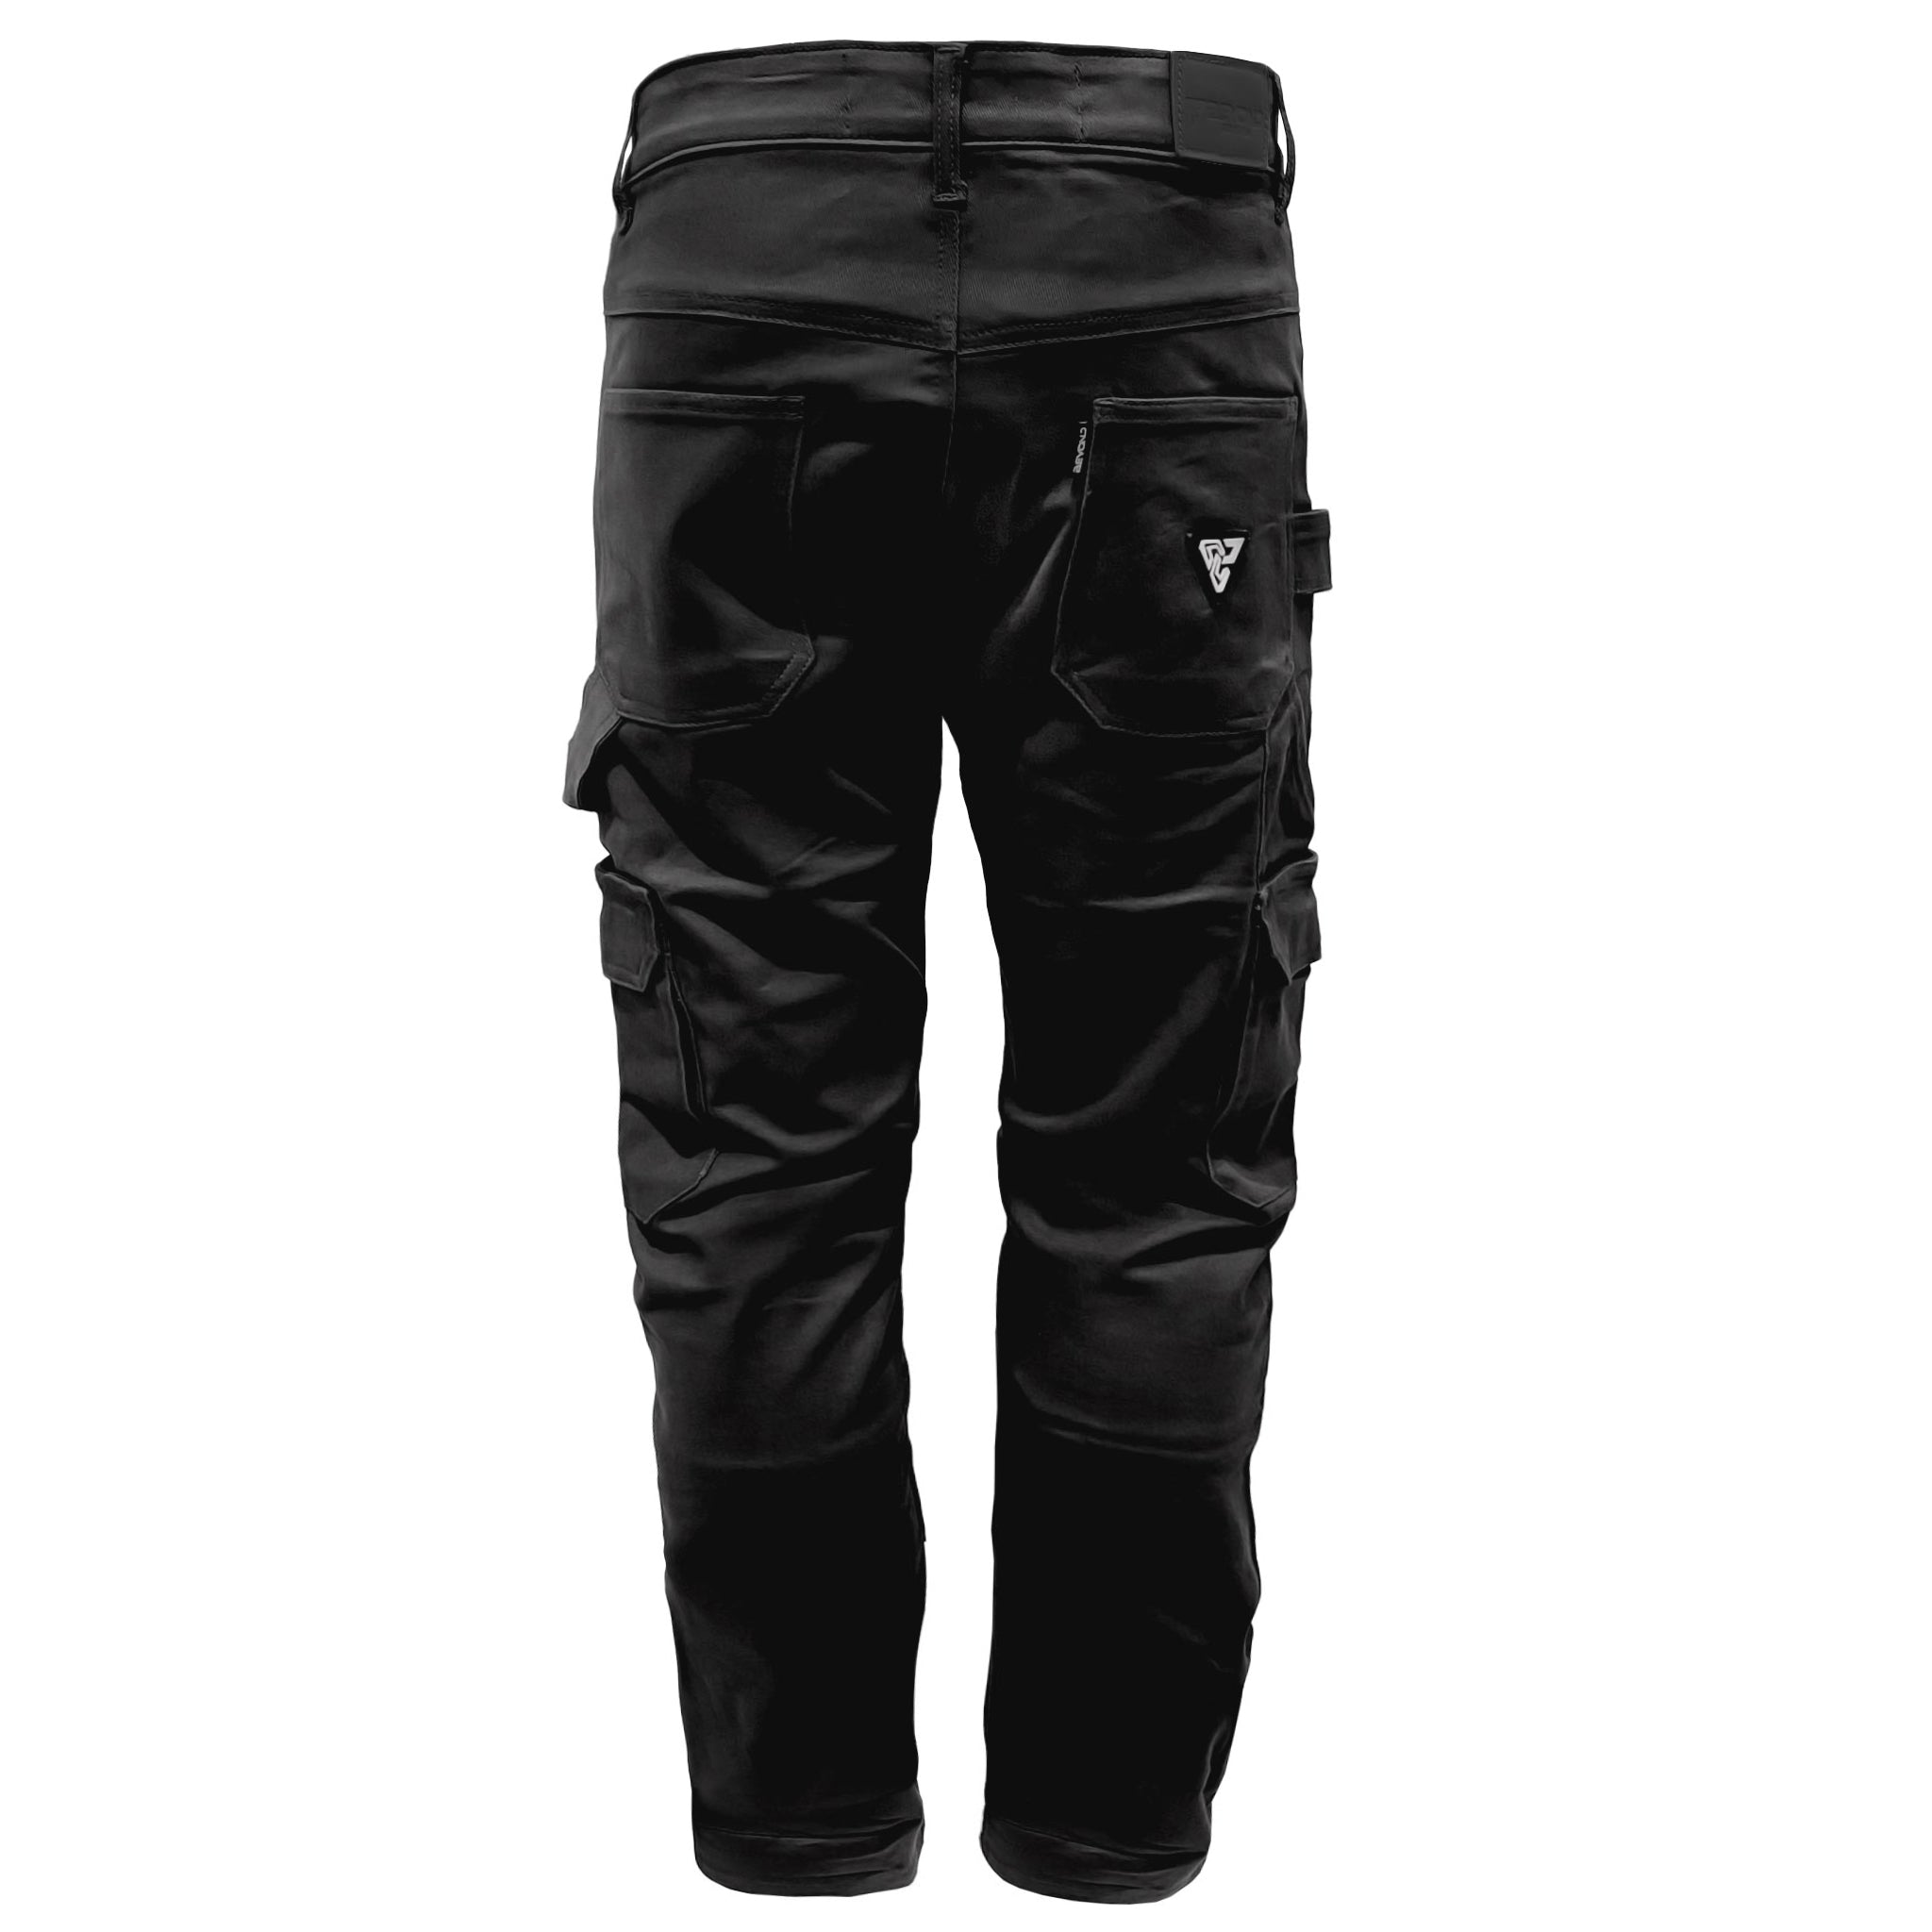 Baggy Fit Cargo Pants - Black - Men